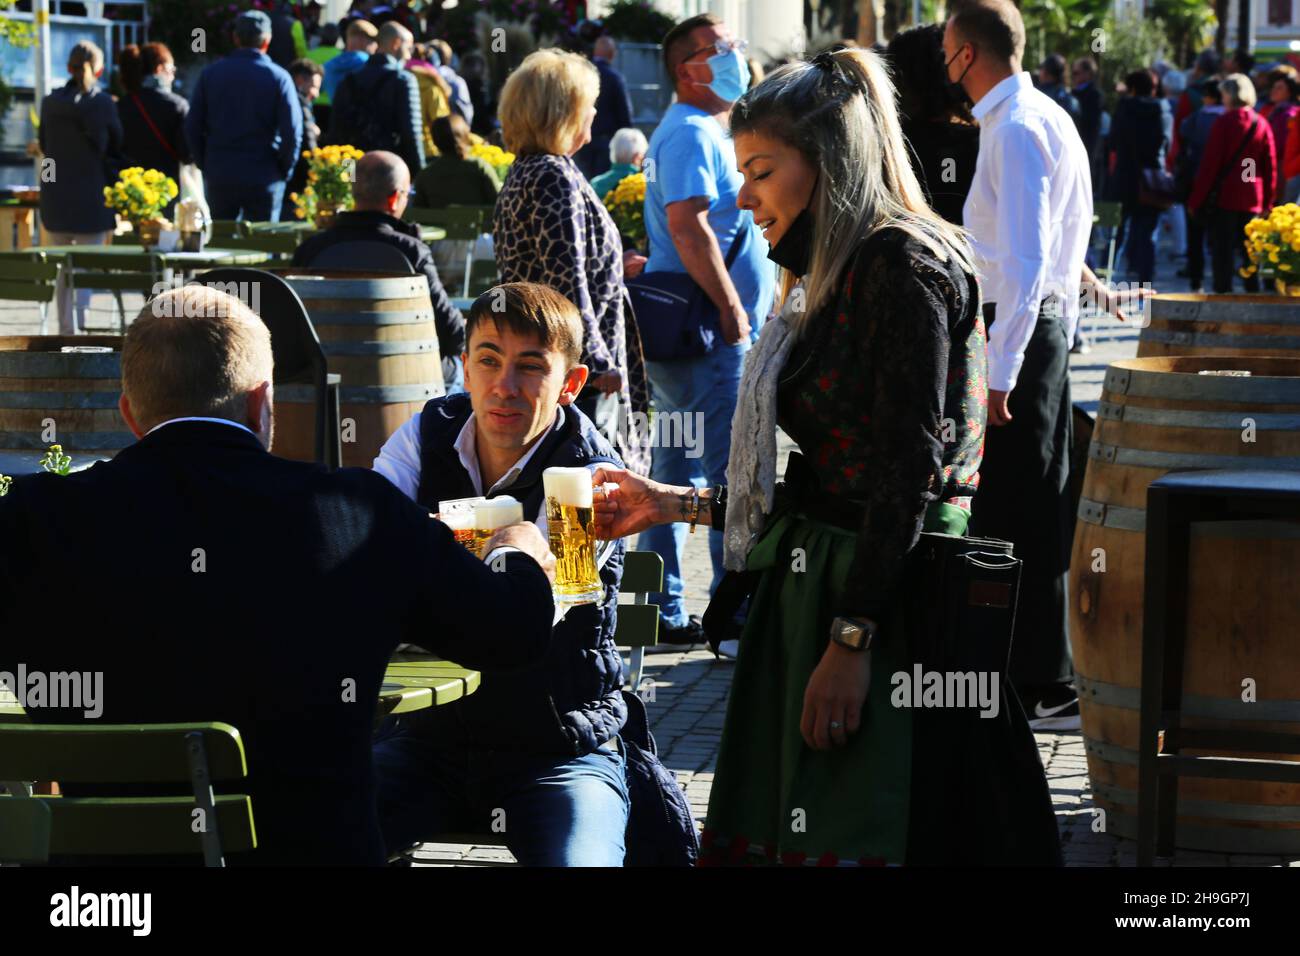 Südtirol, Biergarten, Meran, Kurstadt, Weinfest, Trachtenfest, Unterhaltung und Freude im Biergarten beim Wein und Bier trinken Stock Photo